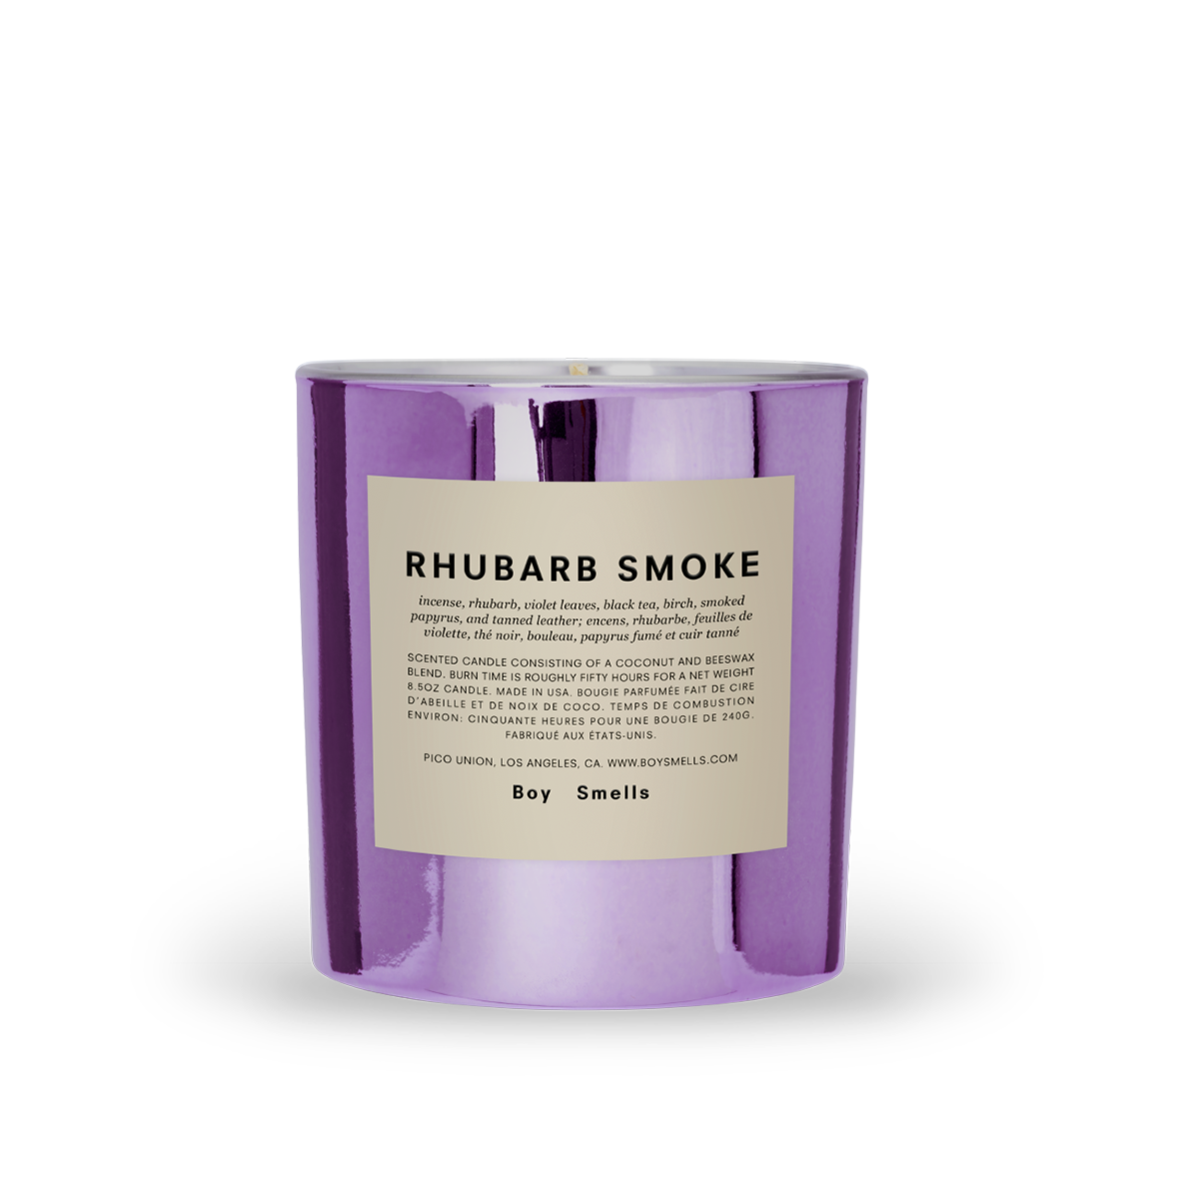 RHUBARB SMOKE